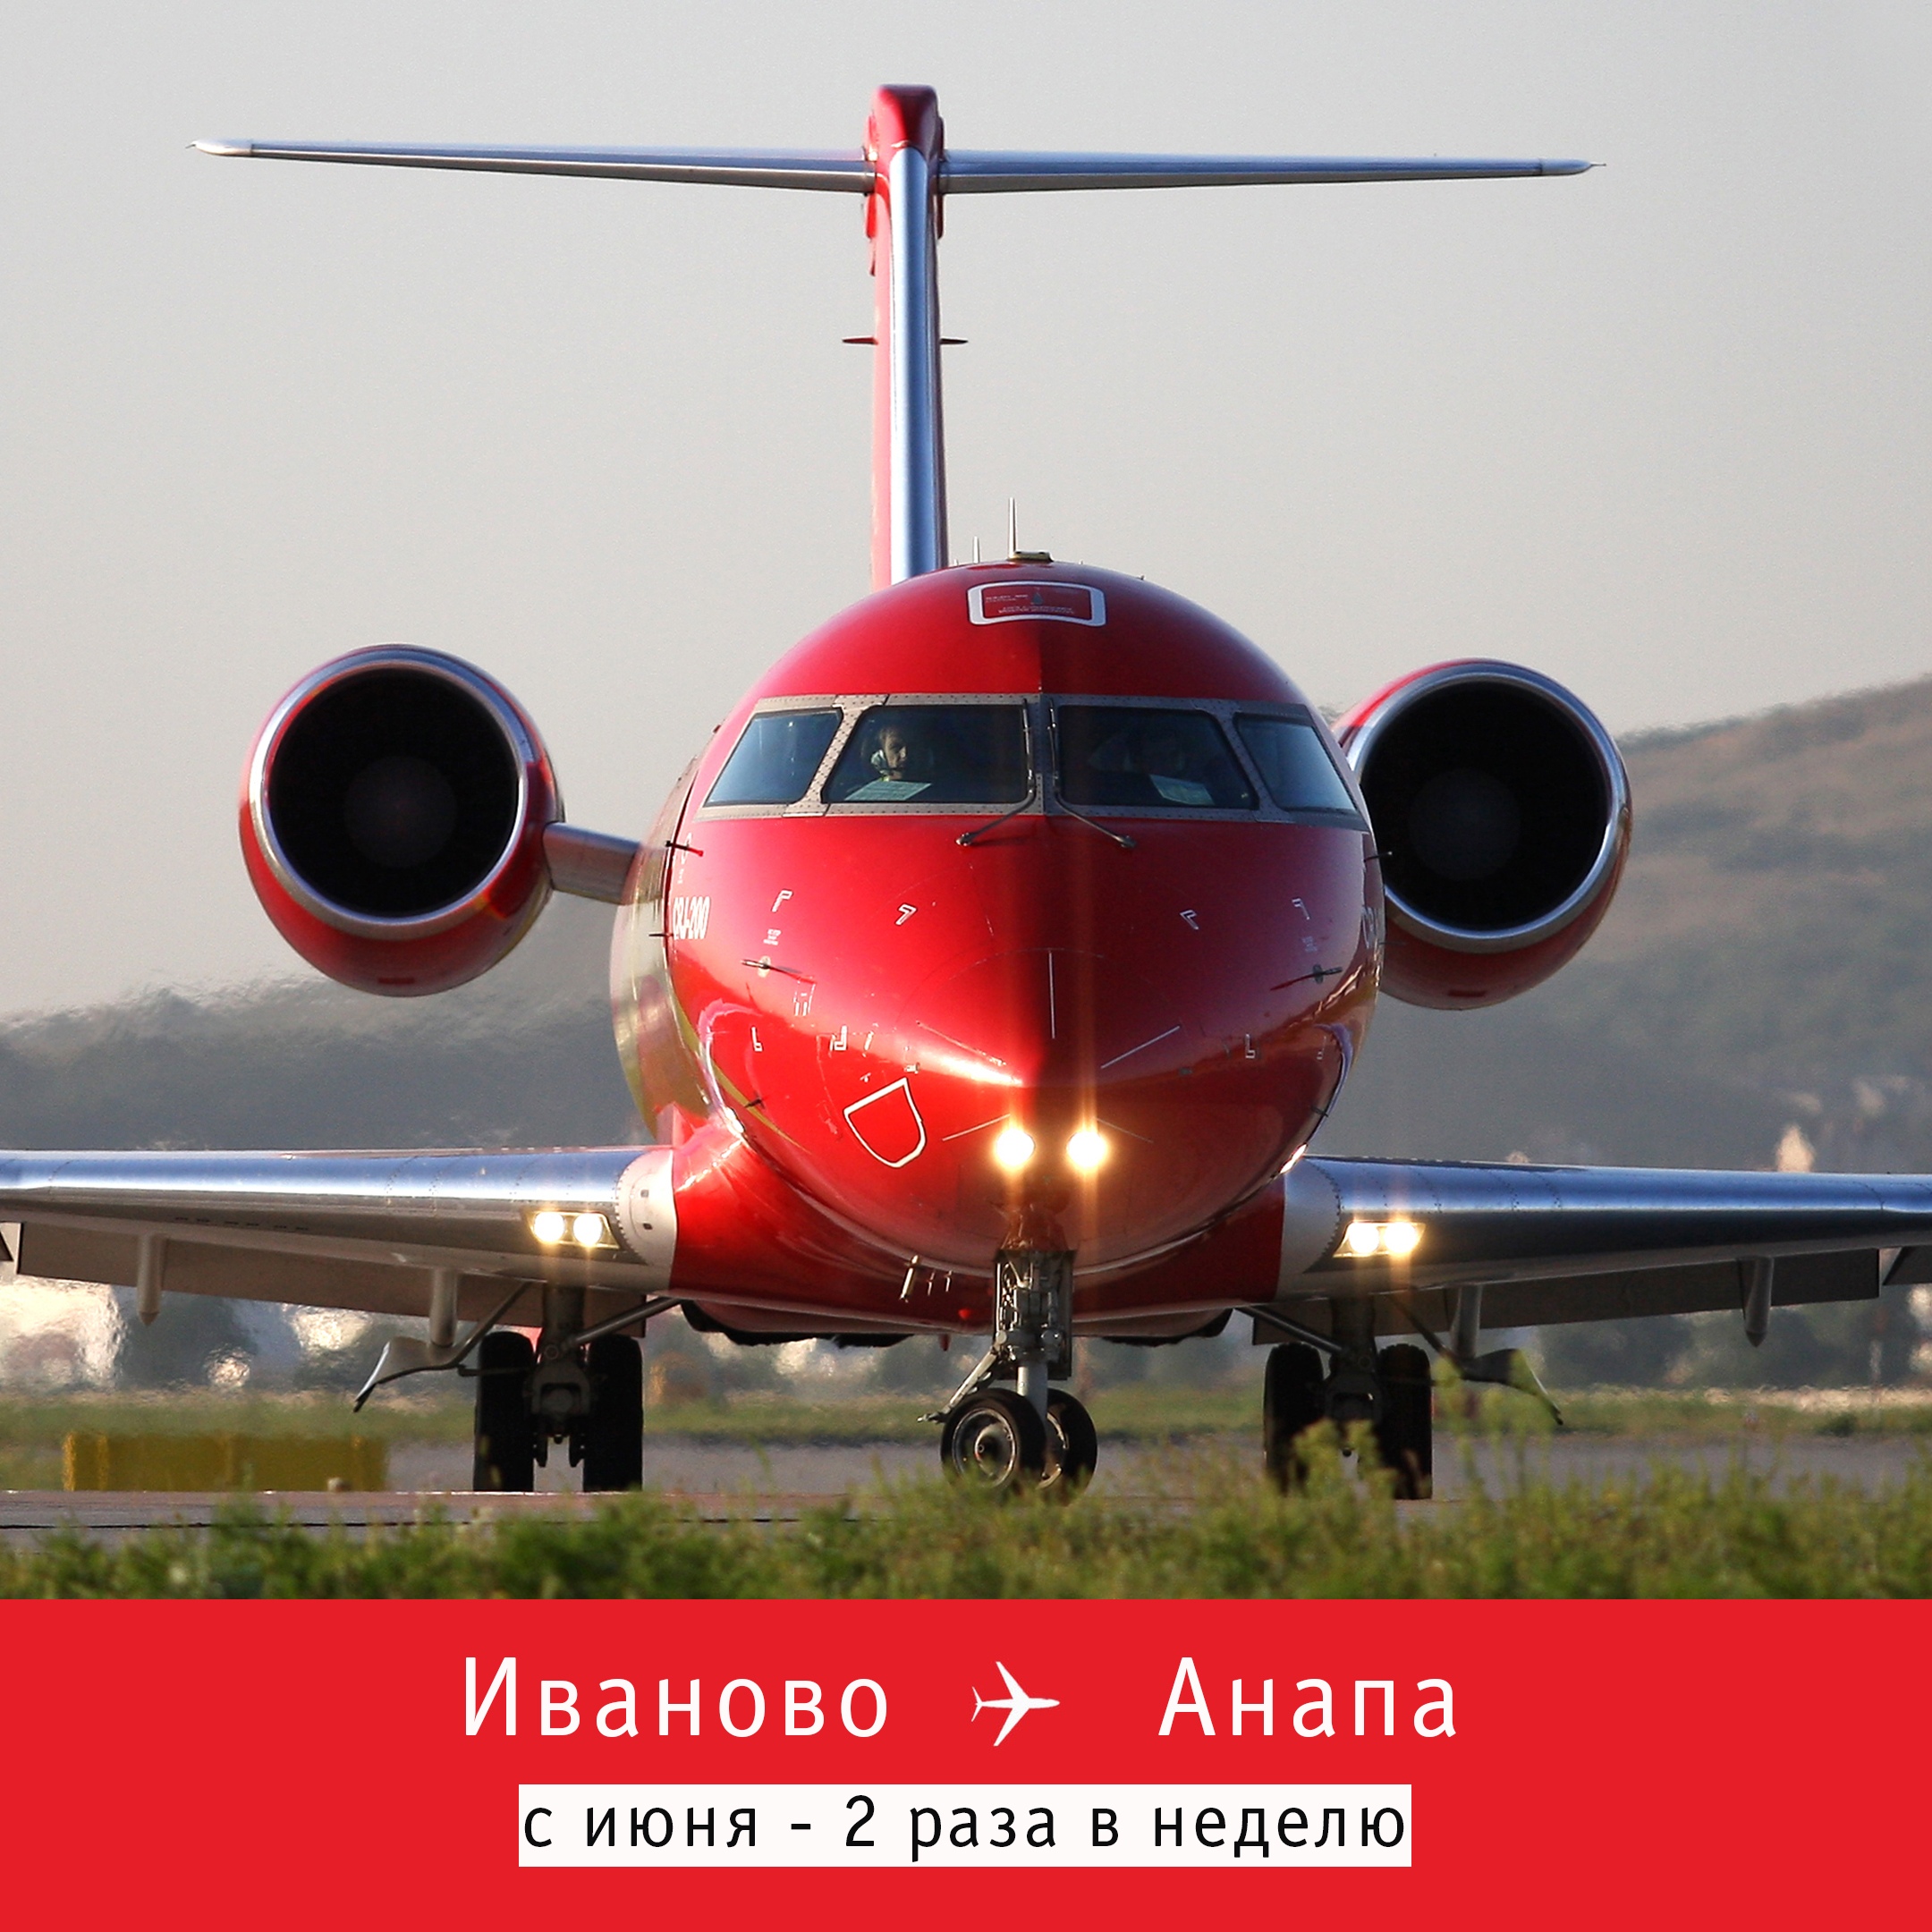 Полеты в Анапу из Иванова начнутся в июне